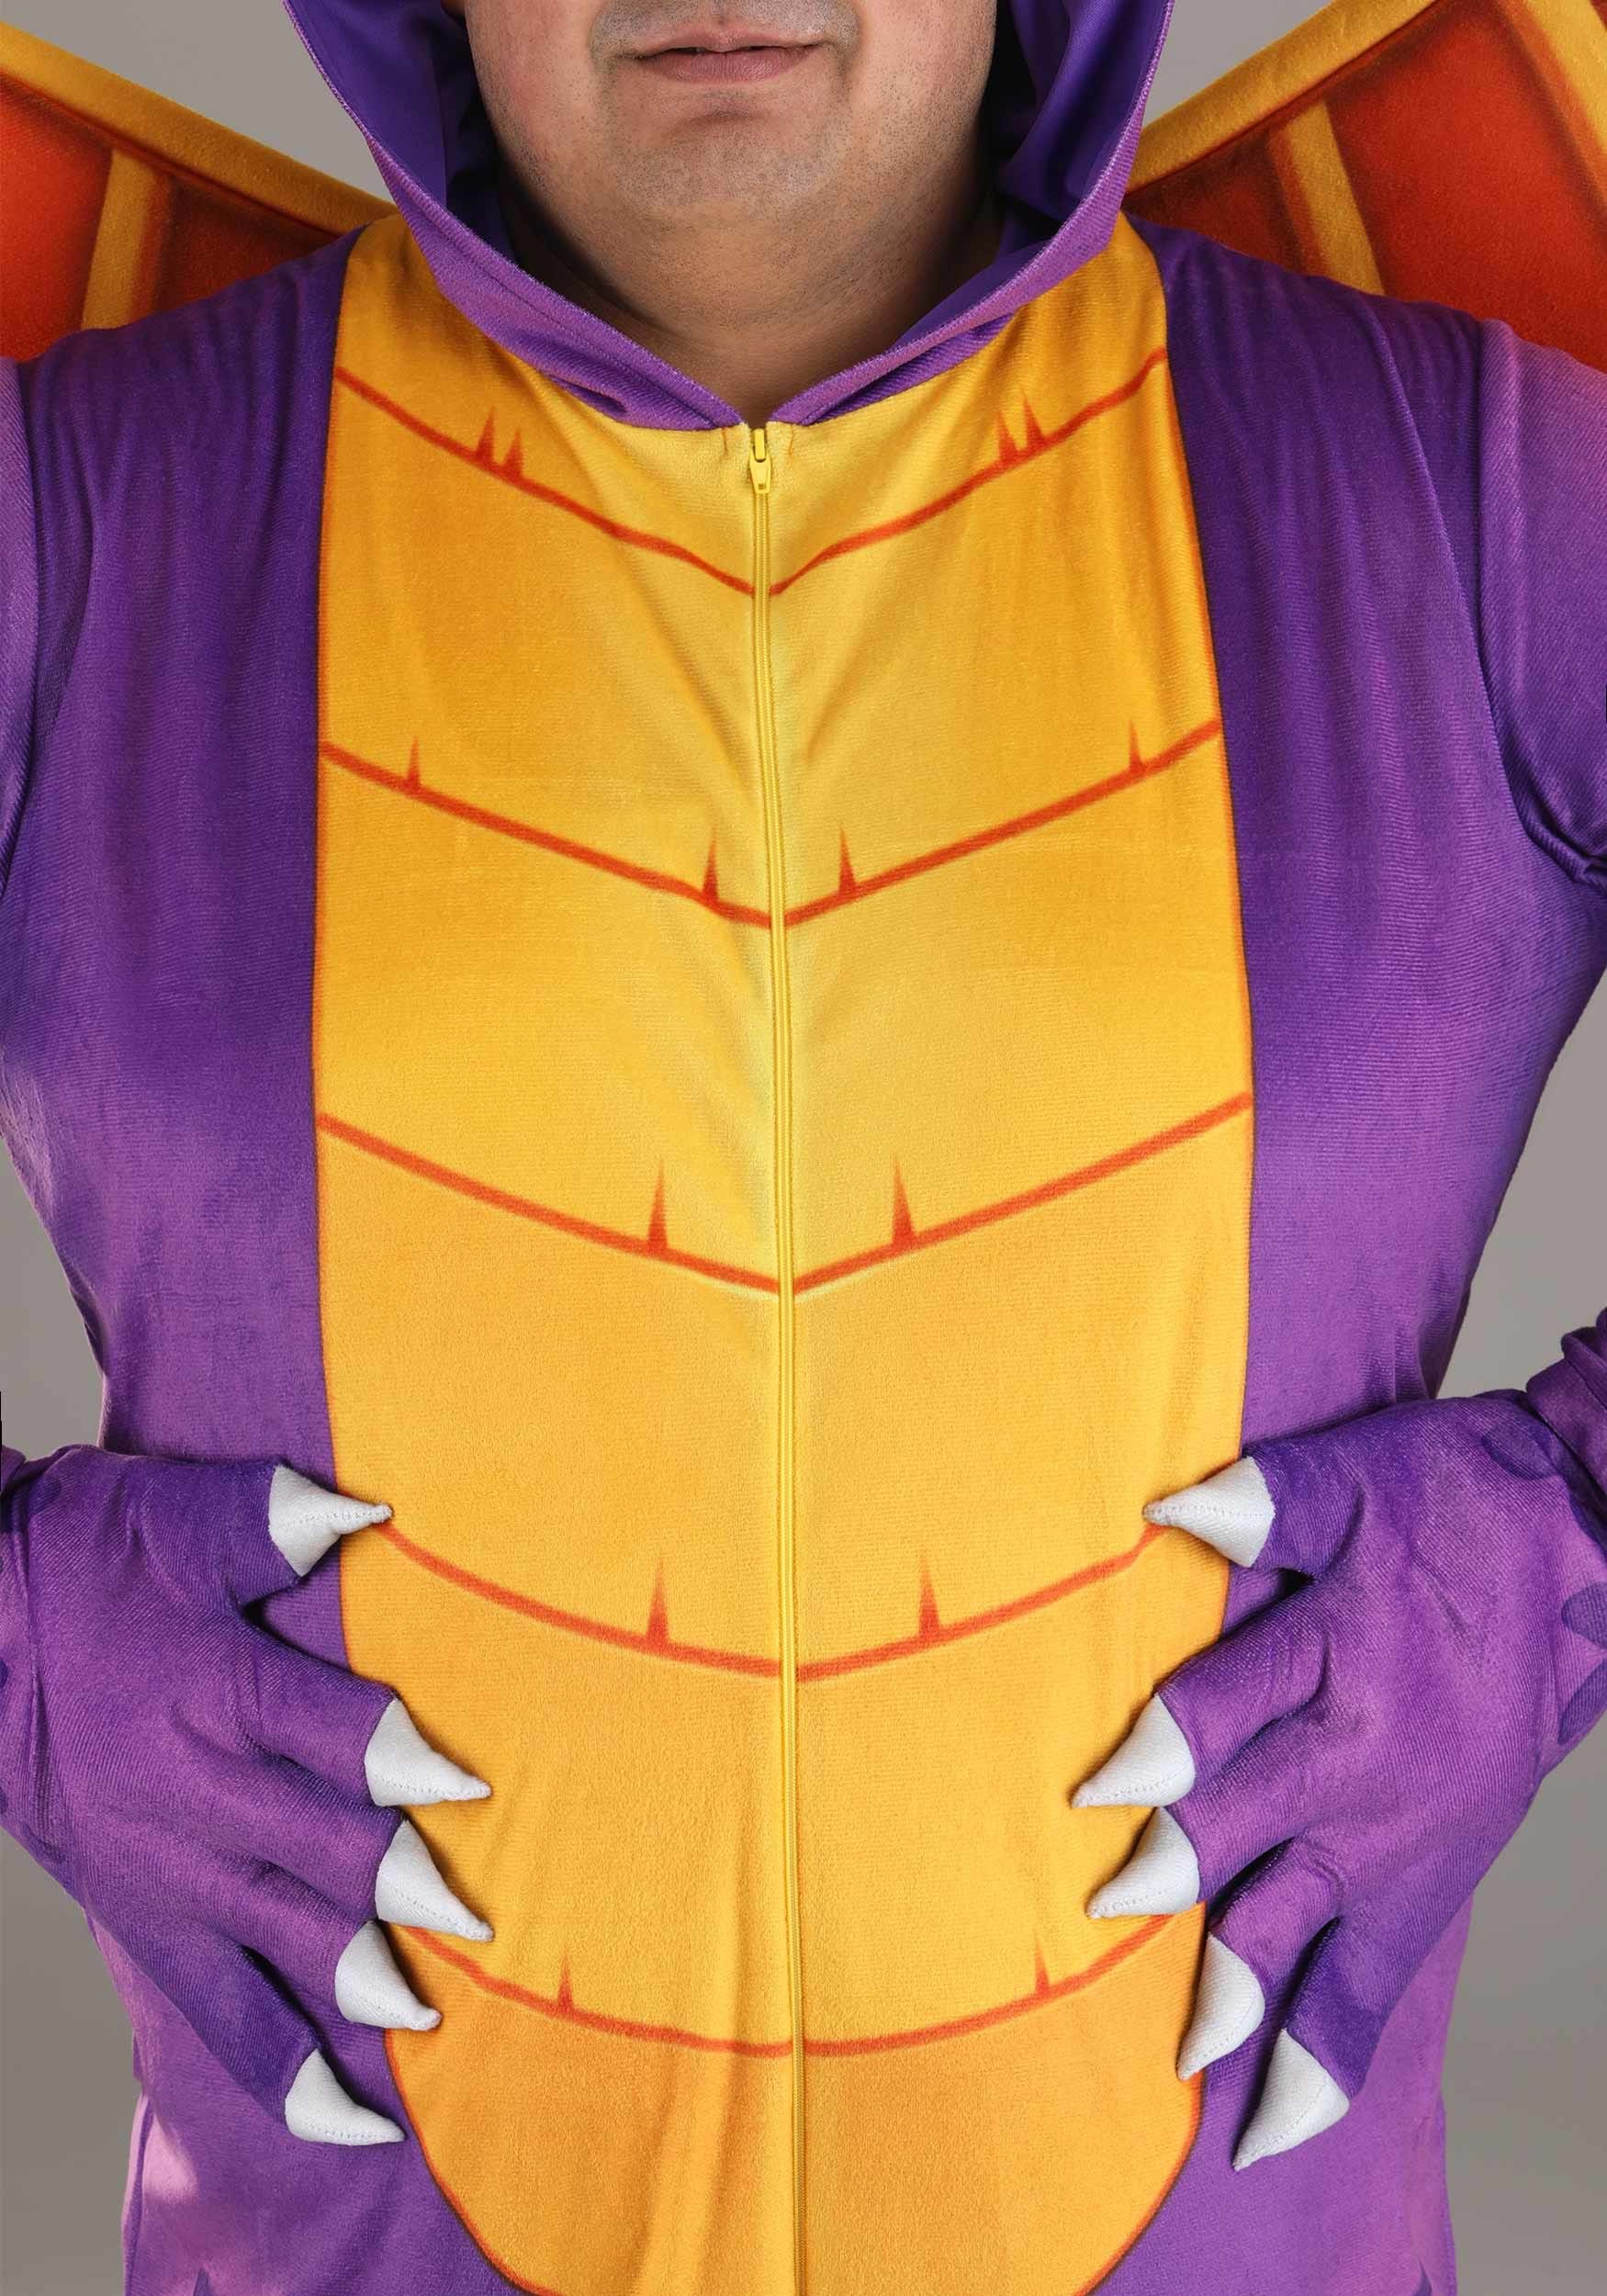 Spyro The Dragon Adult Plus Size Fancy Dress Costume Jumpsuit